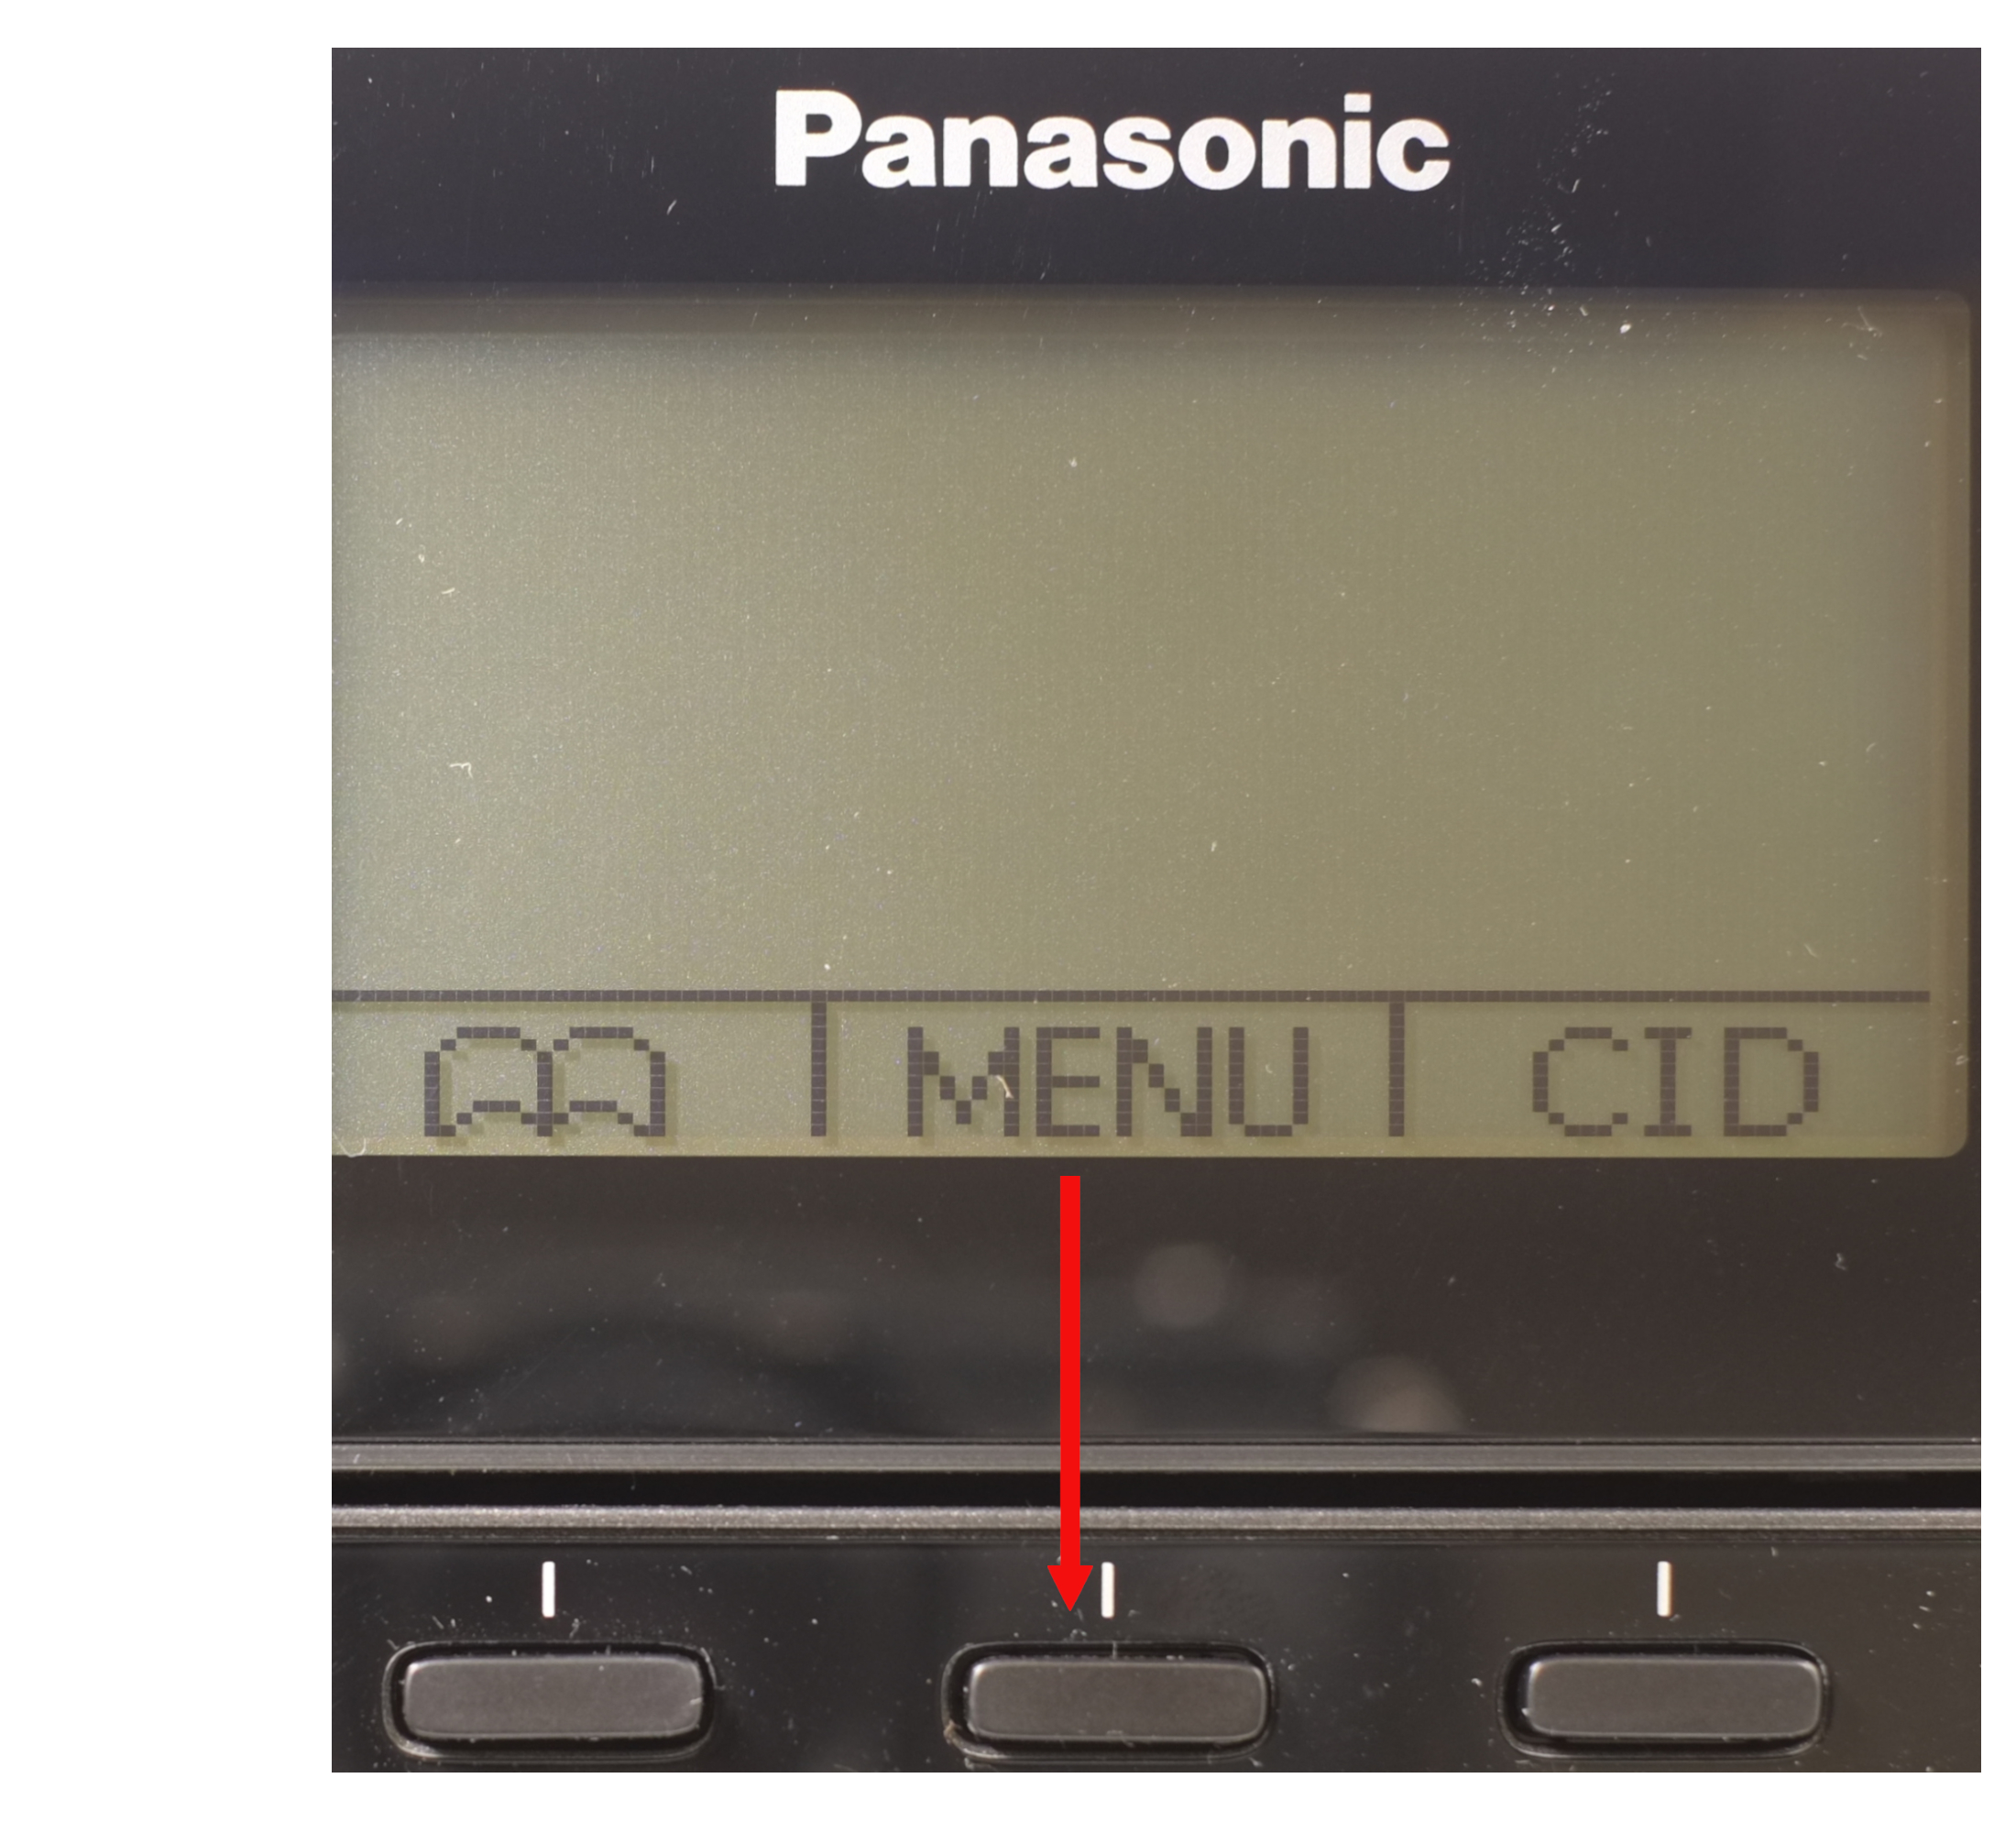 Panasoinc phone menu keys